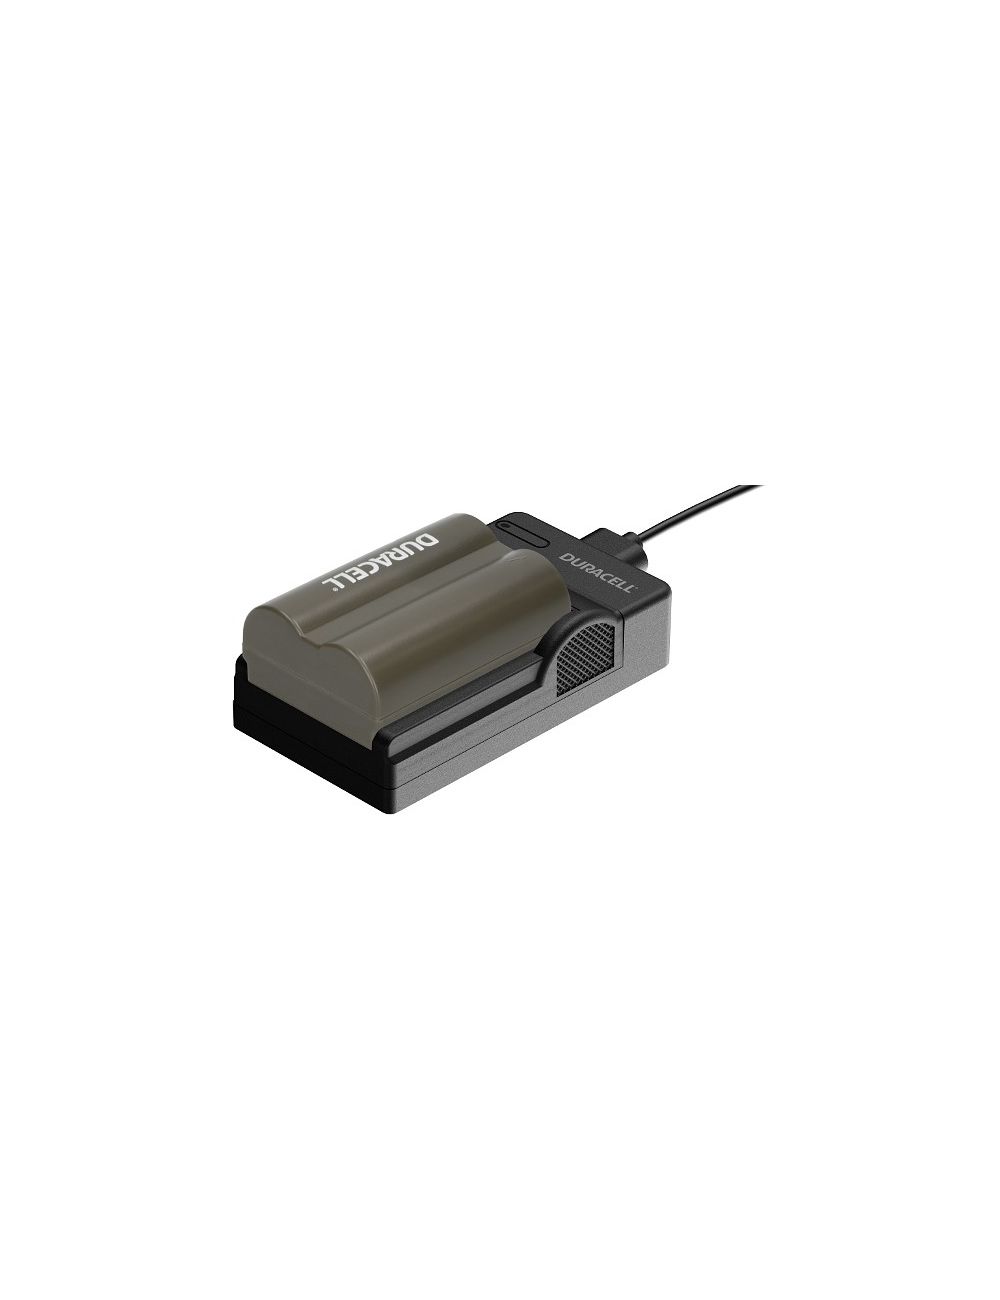 Cargador USB para baterías Canon BP-511 y BP522 - DRC5902 -  - 2000000000299 - 2